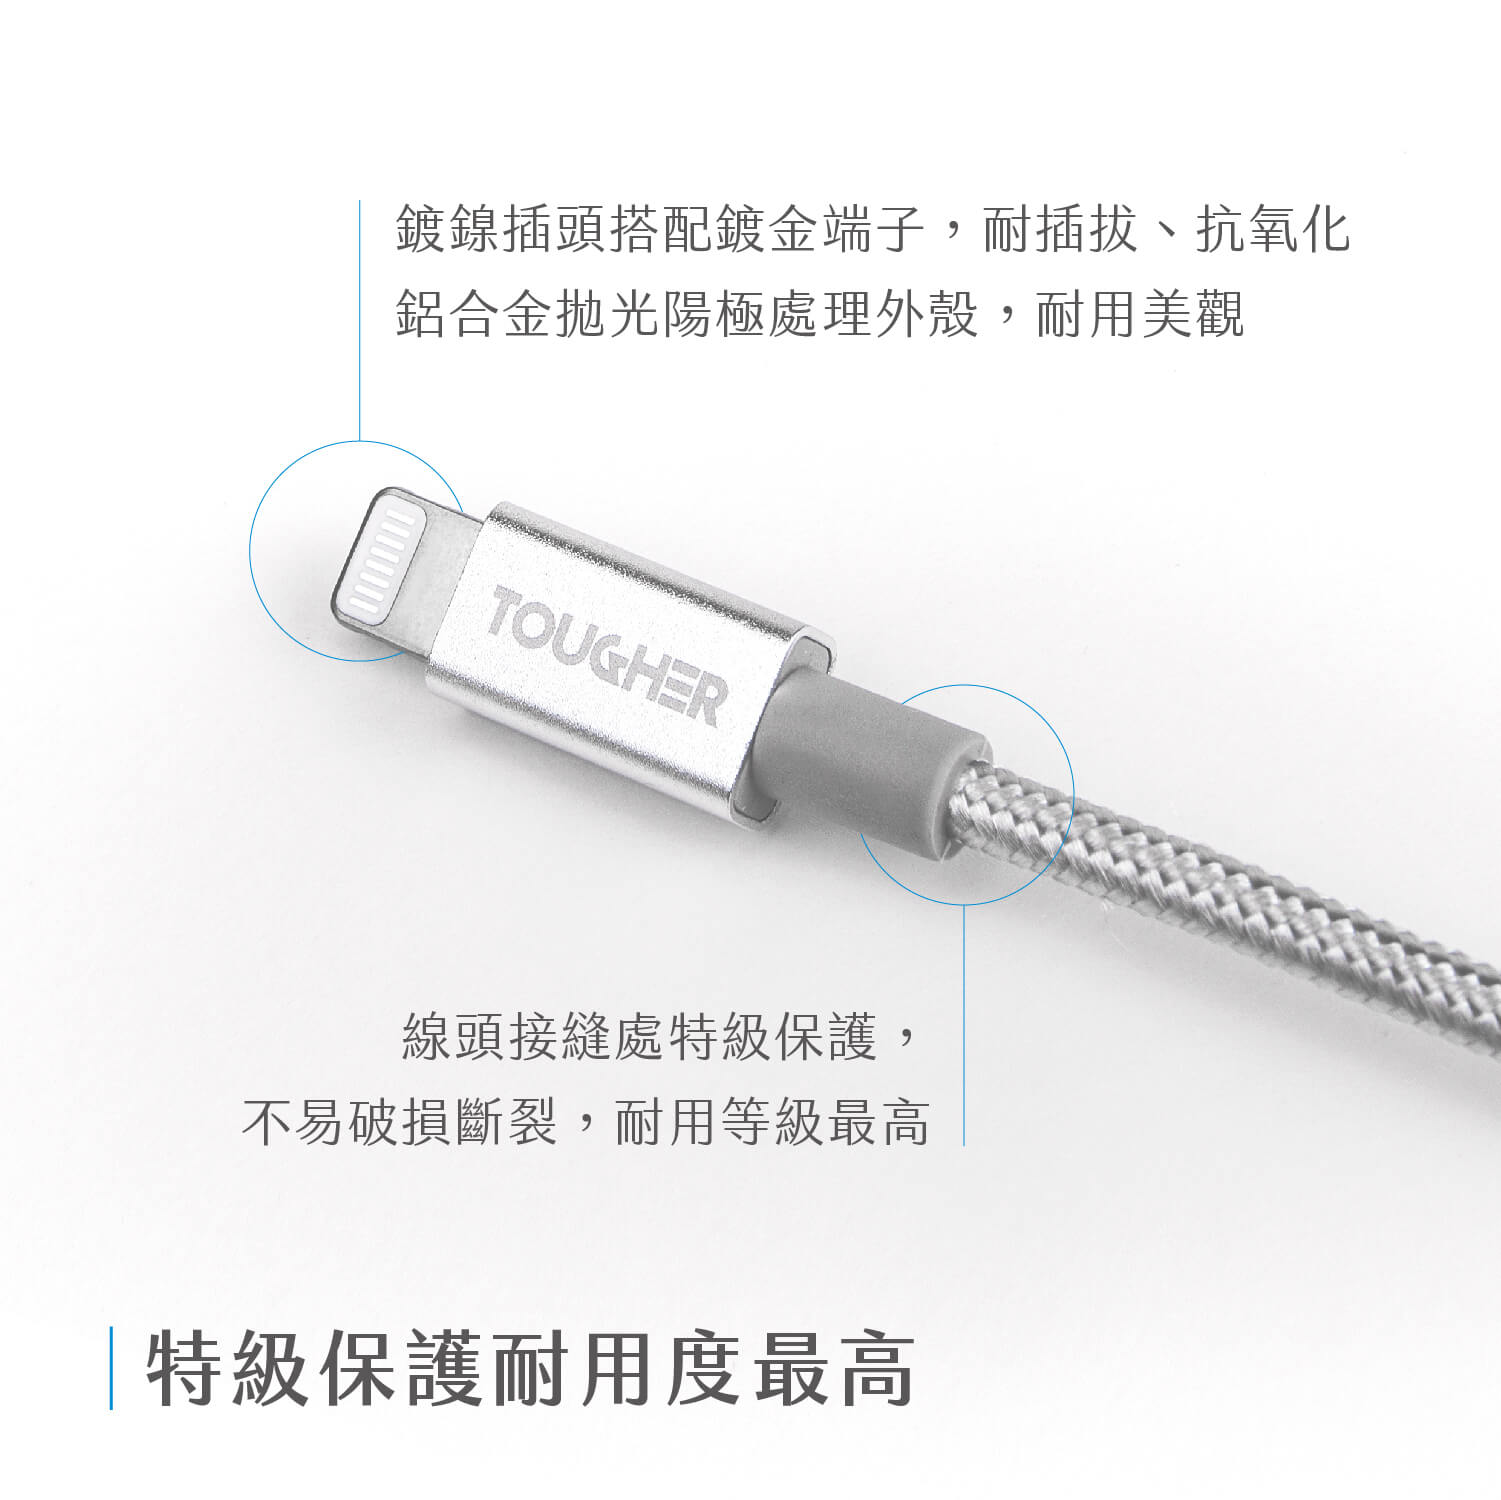 TOUGHER USB-A to Type C 1.2m金屬編織傳輸線